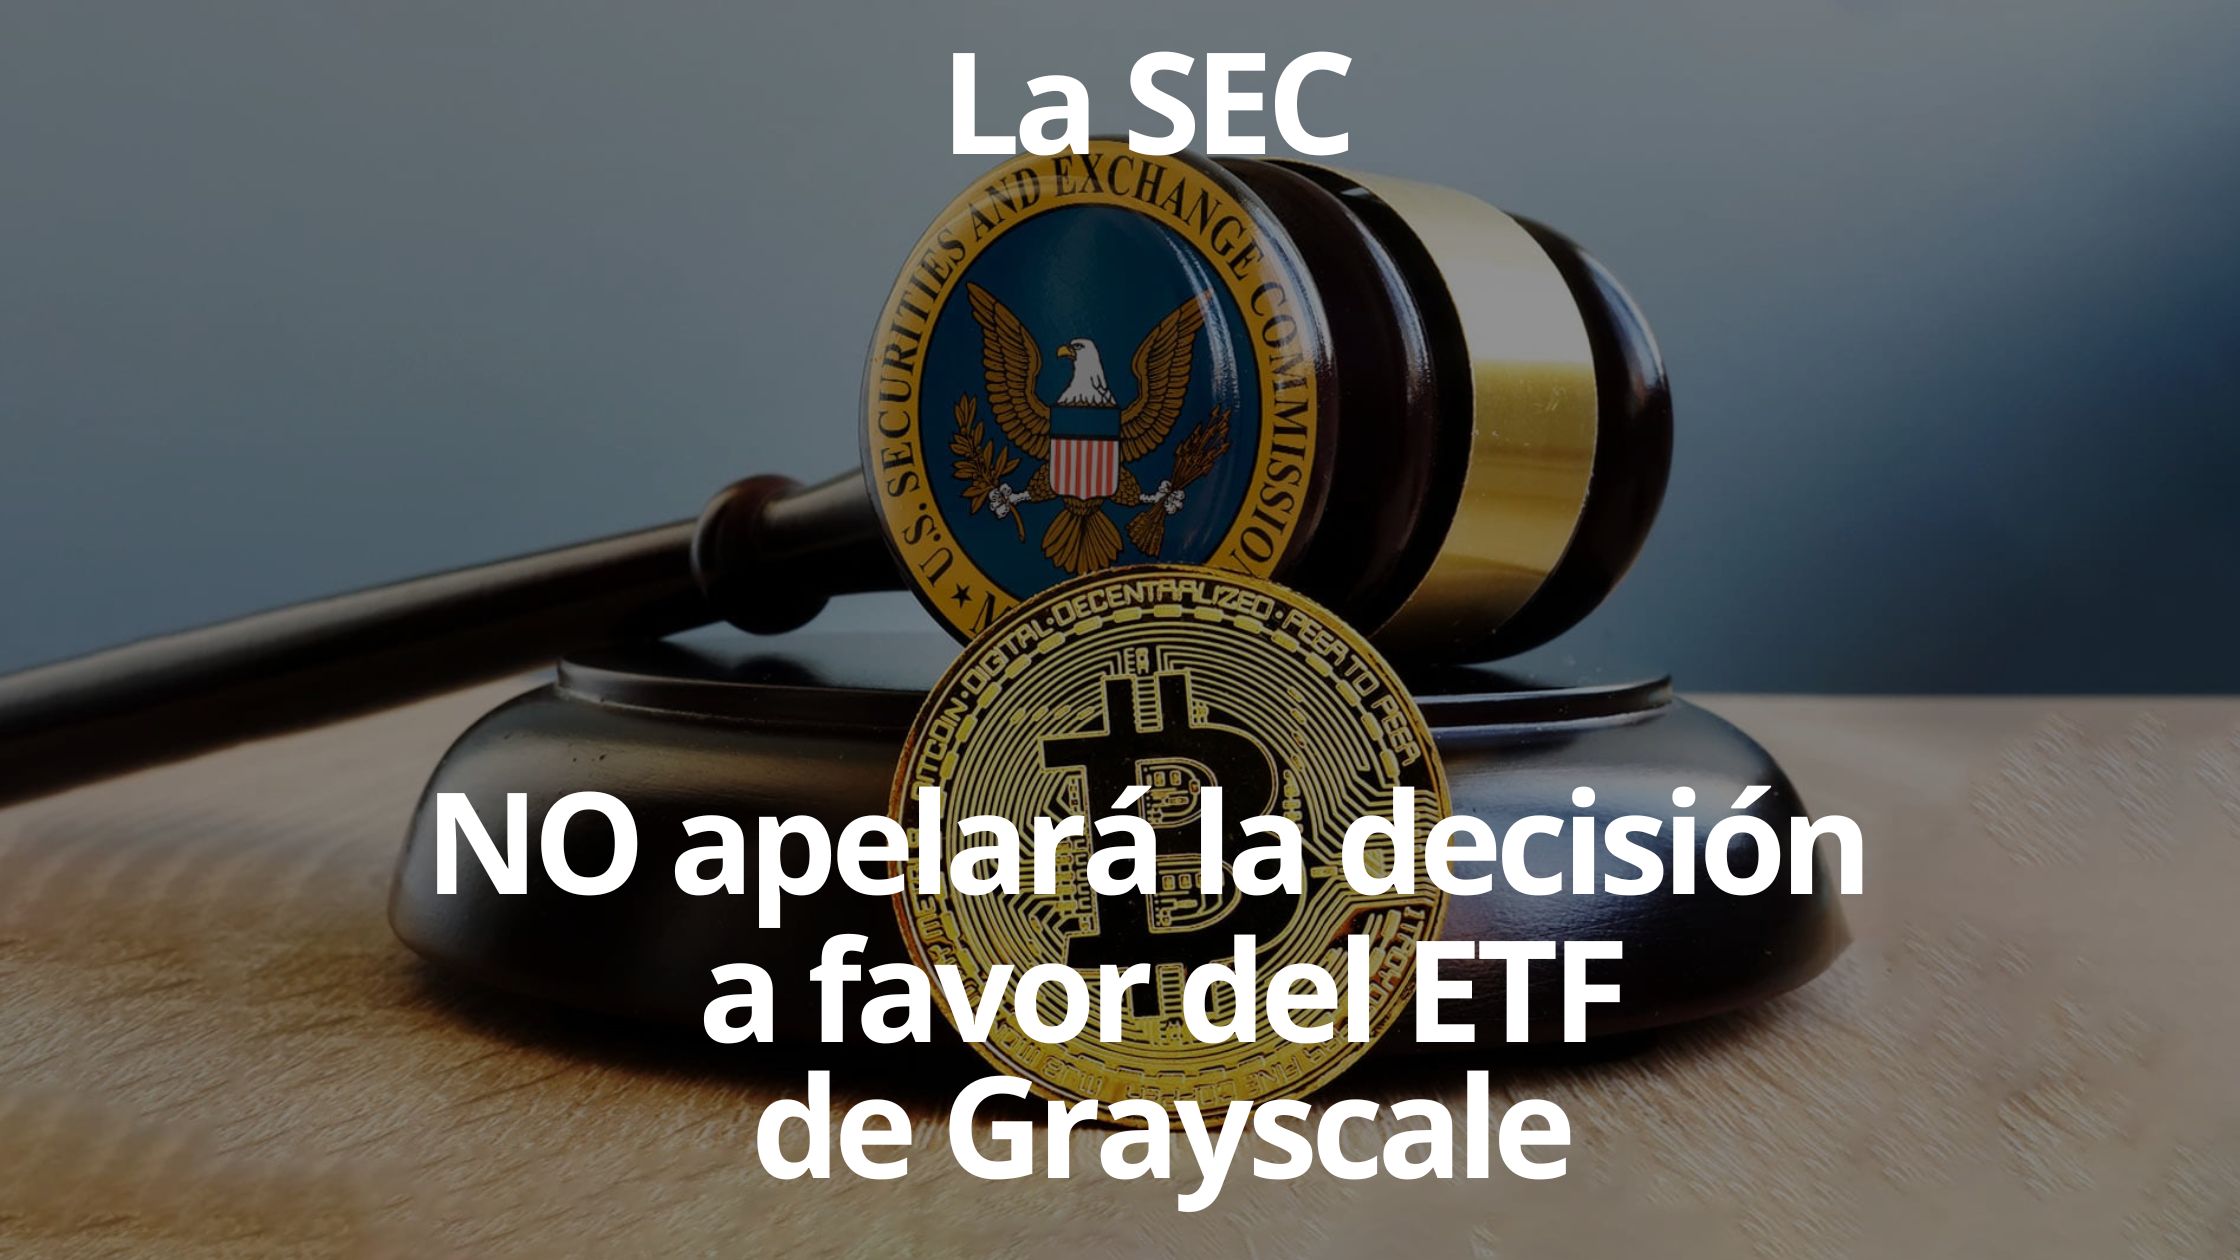 La SEC de EE. UU. no apelará la decisión judicial a favor de Grayscale, allanando el camino para un posible ETF de Bitcoin. La noticia ha causado volatilidad en el mercado de Bitcoin y ha generado optimismo sobre la legitimación de las criptomonedas en el mundo financiero.